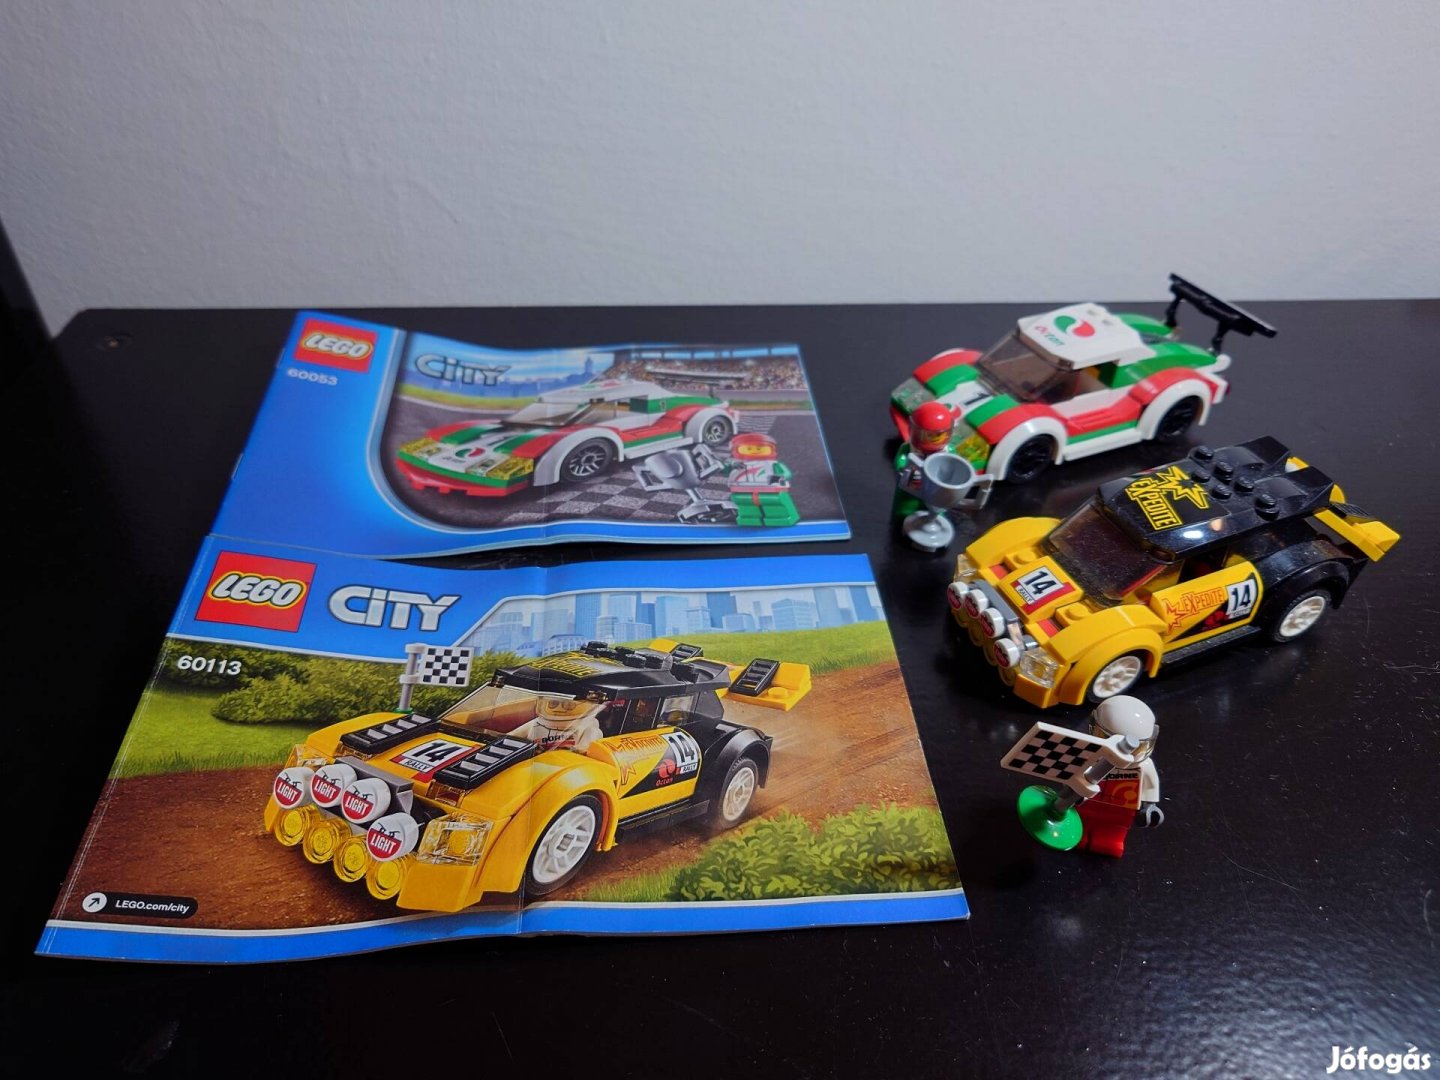 60053-Versenyautó, 60113 Rally autó Lego city 